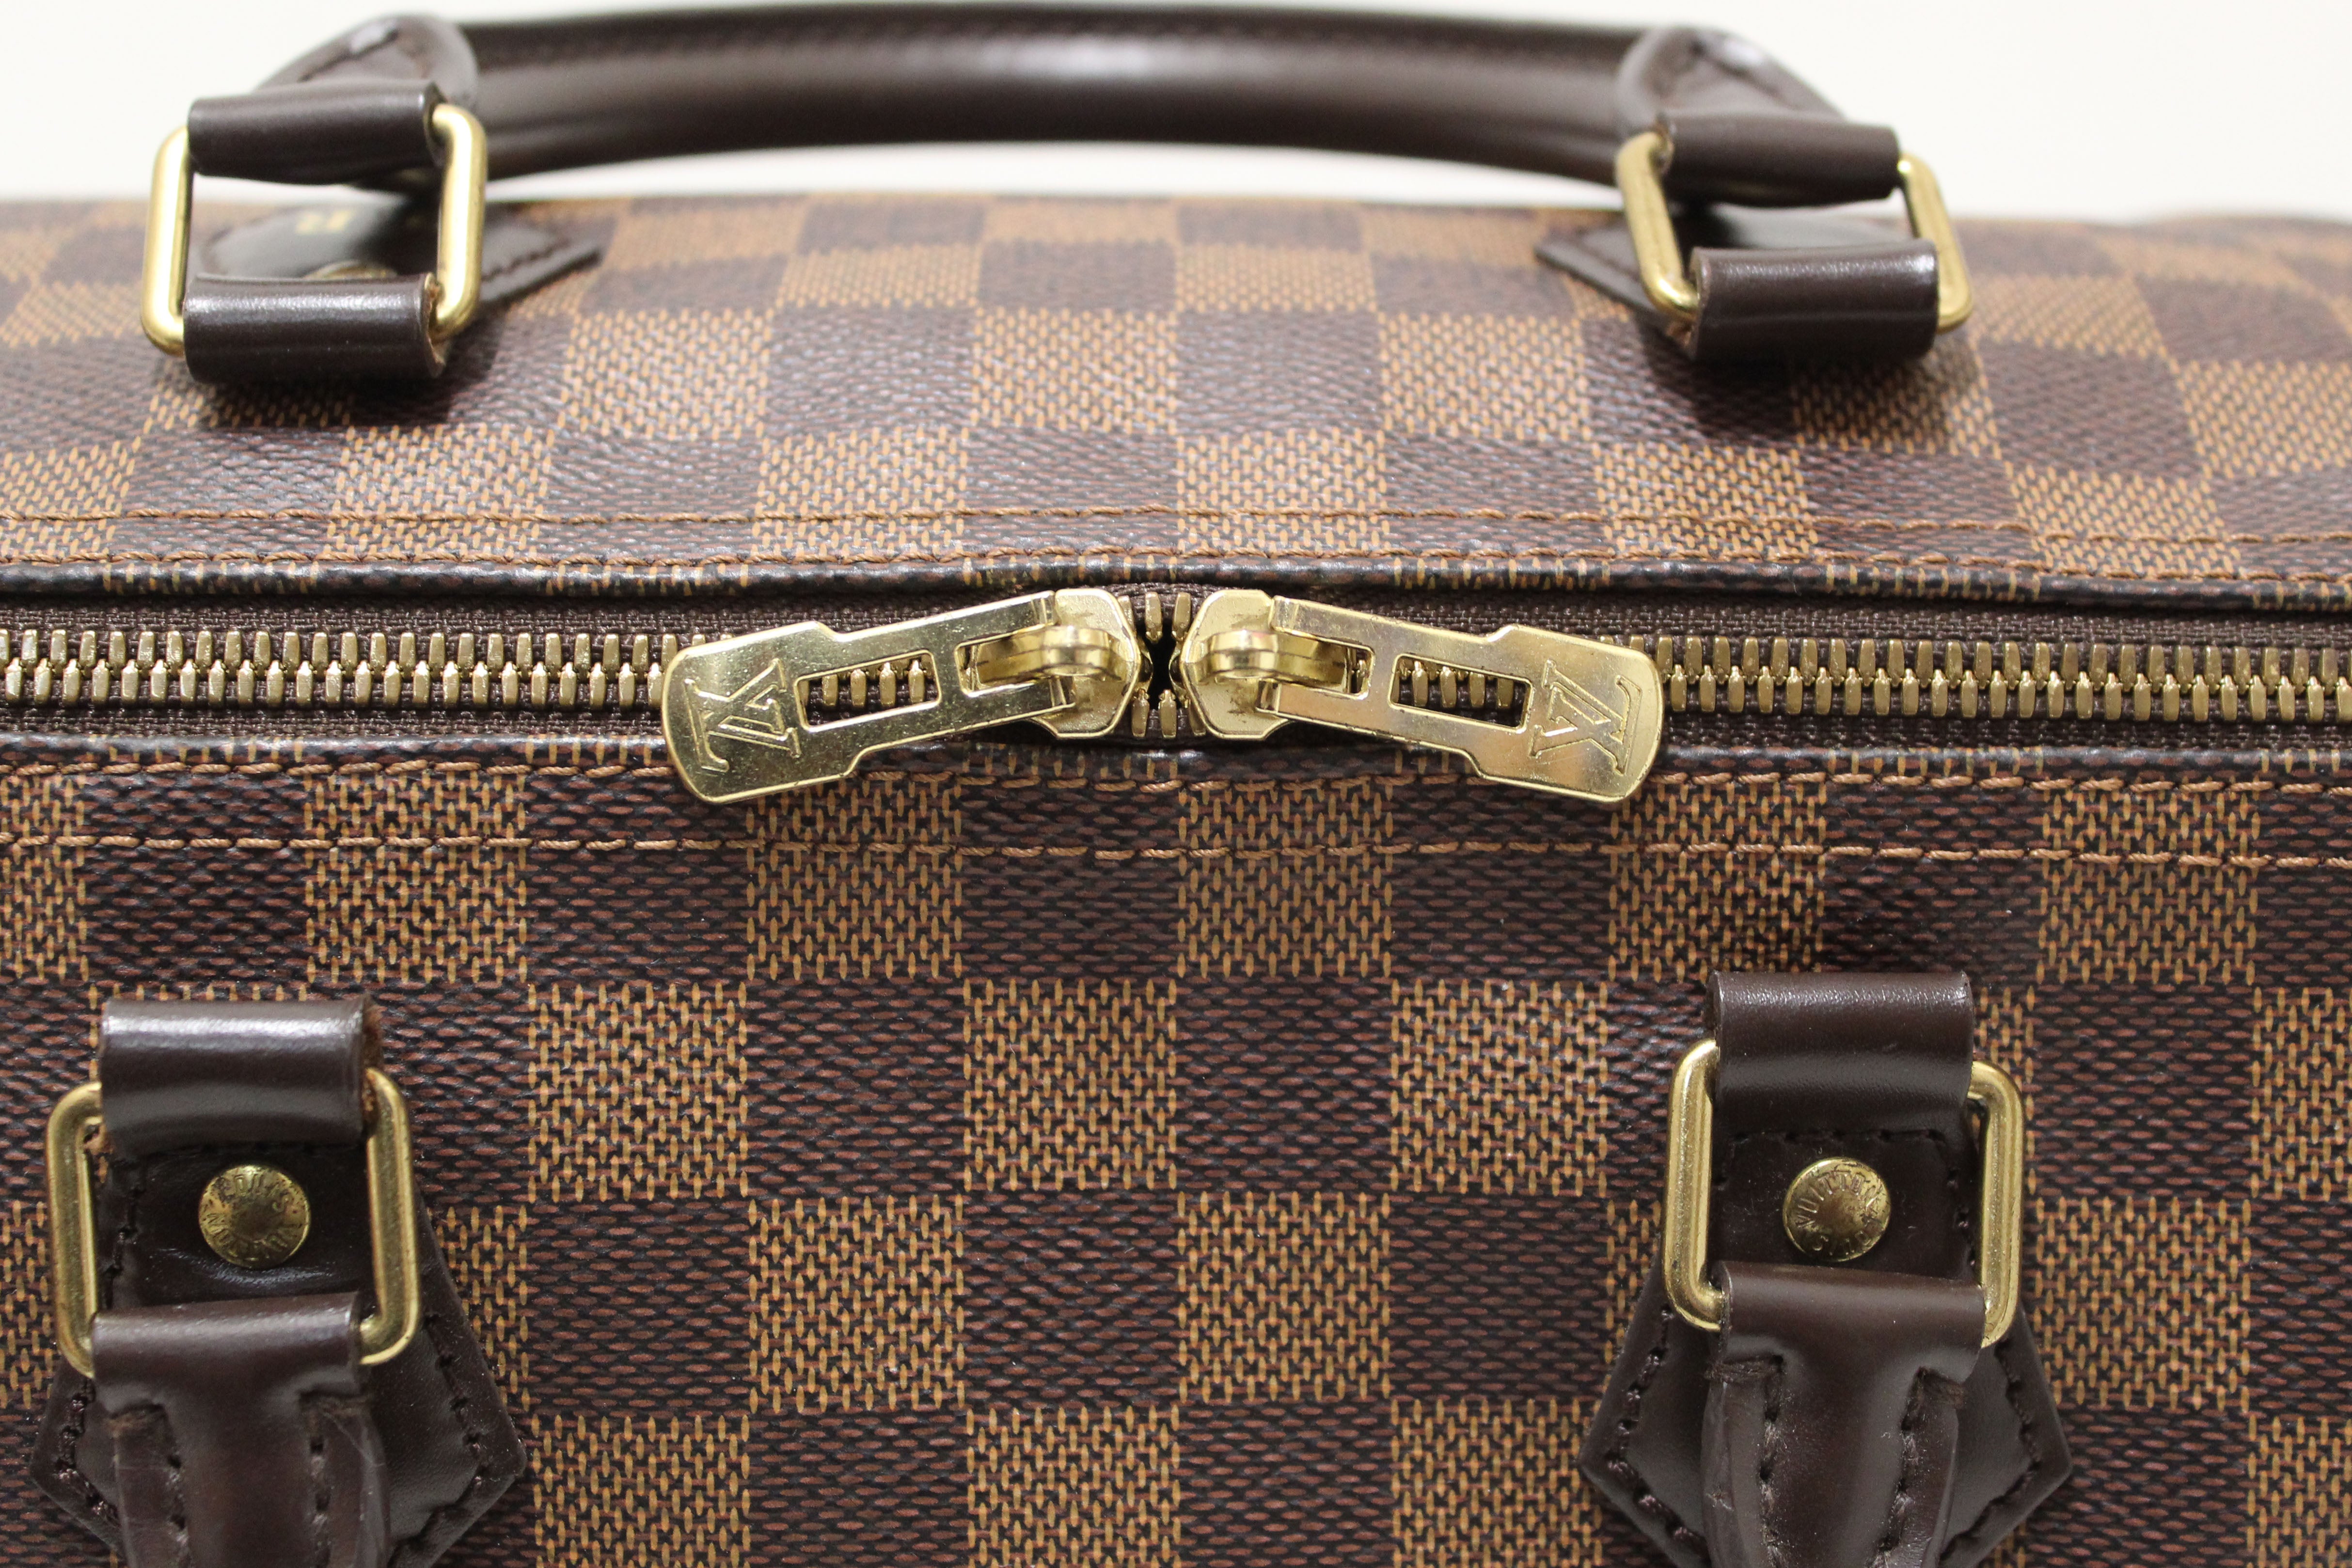 Authentic Louis Vuitton Damier Ebene Speedy 30 Bandouliere Bag